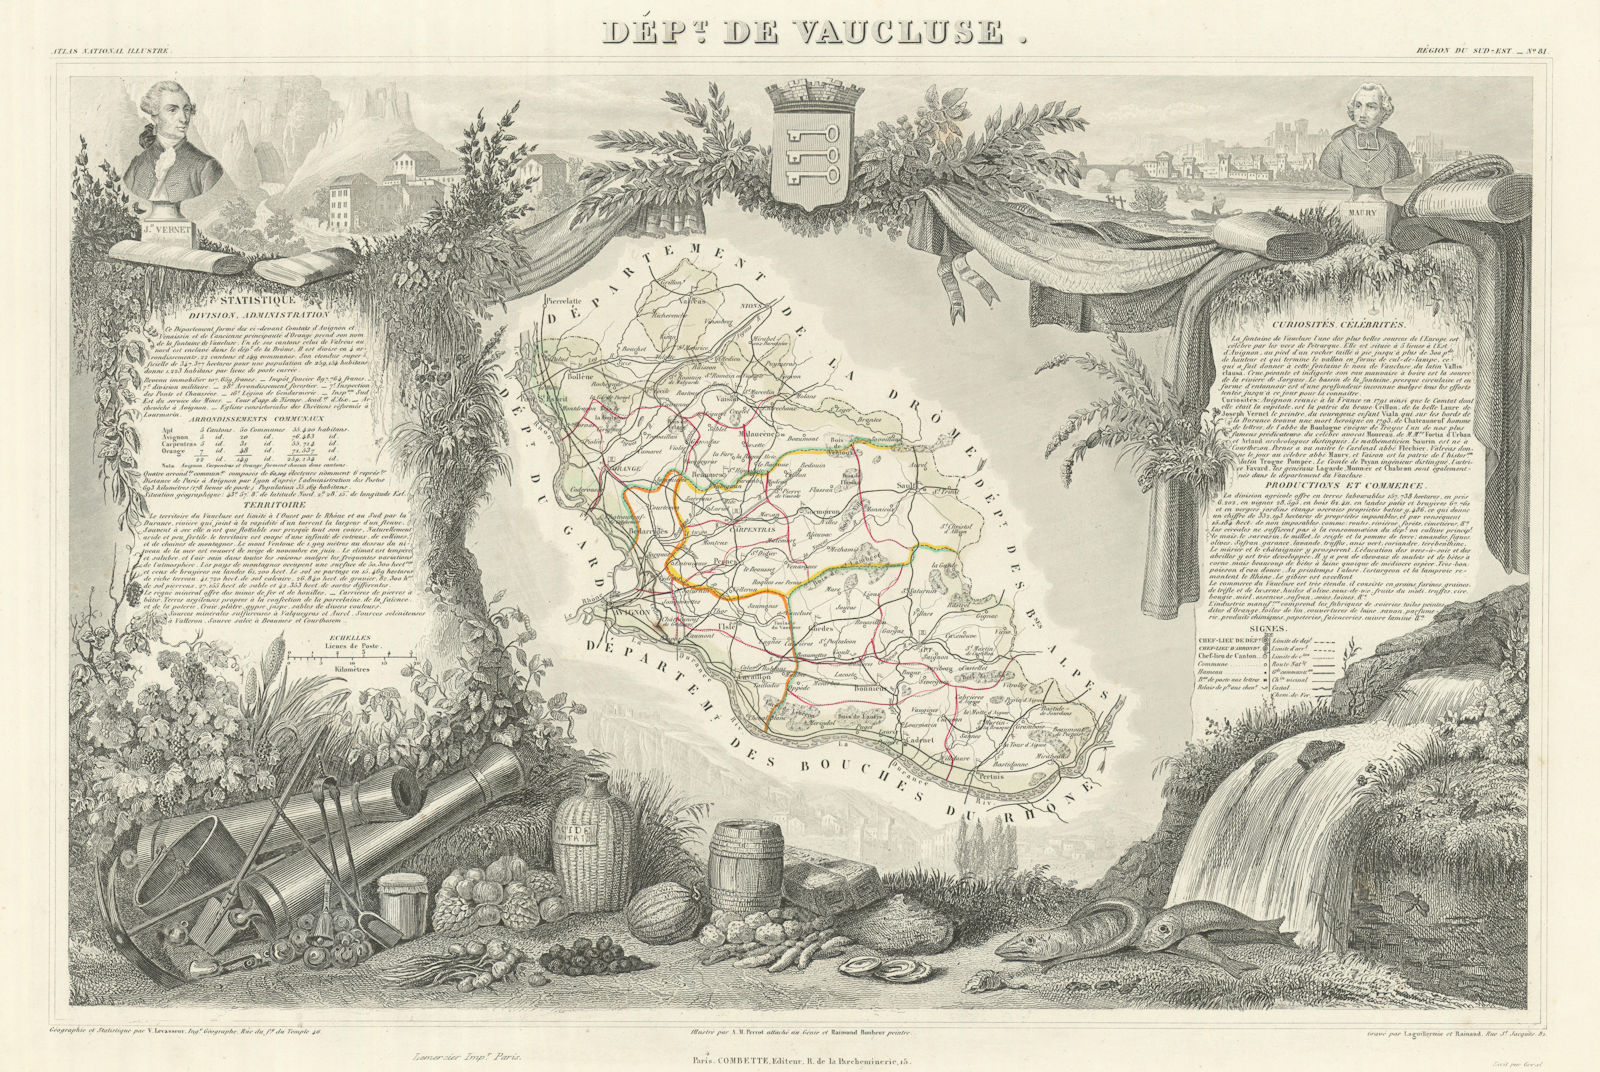 Associate Product Département de VAUCLUSE. Decorative antique map/carte by Victor LEVASSEUR 1856